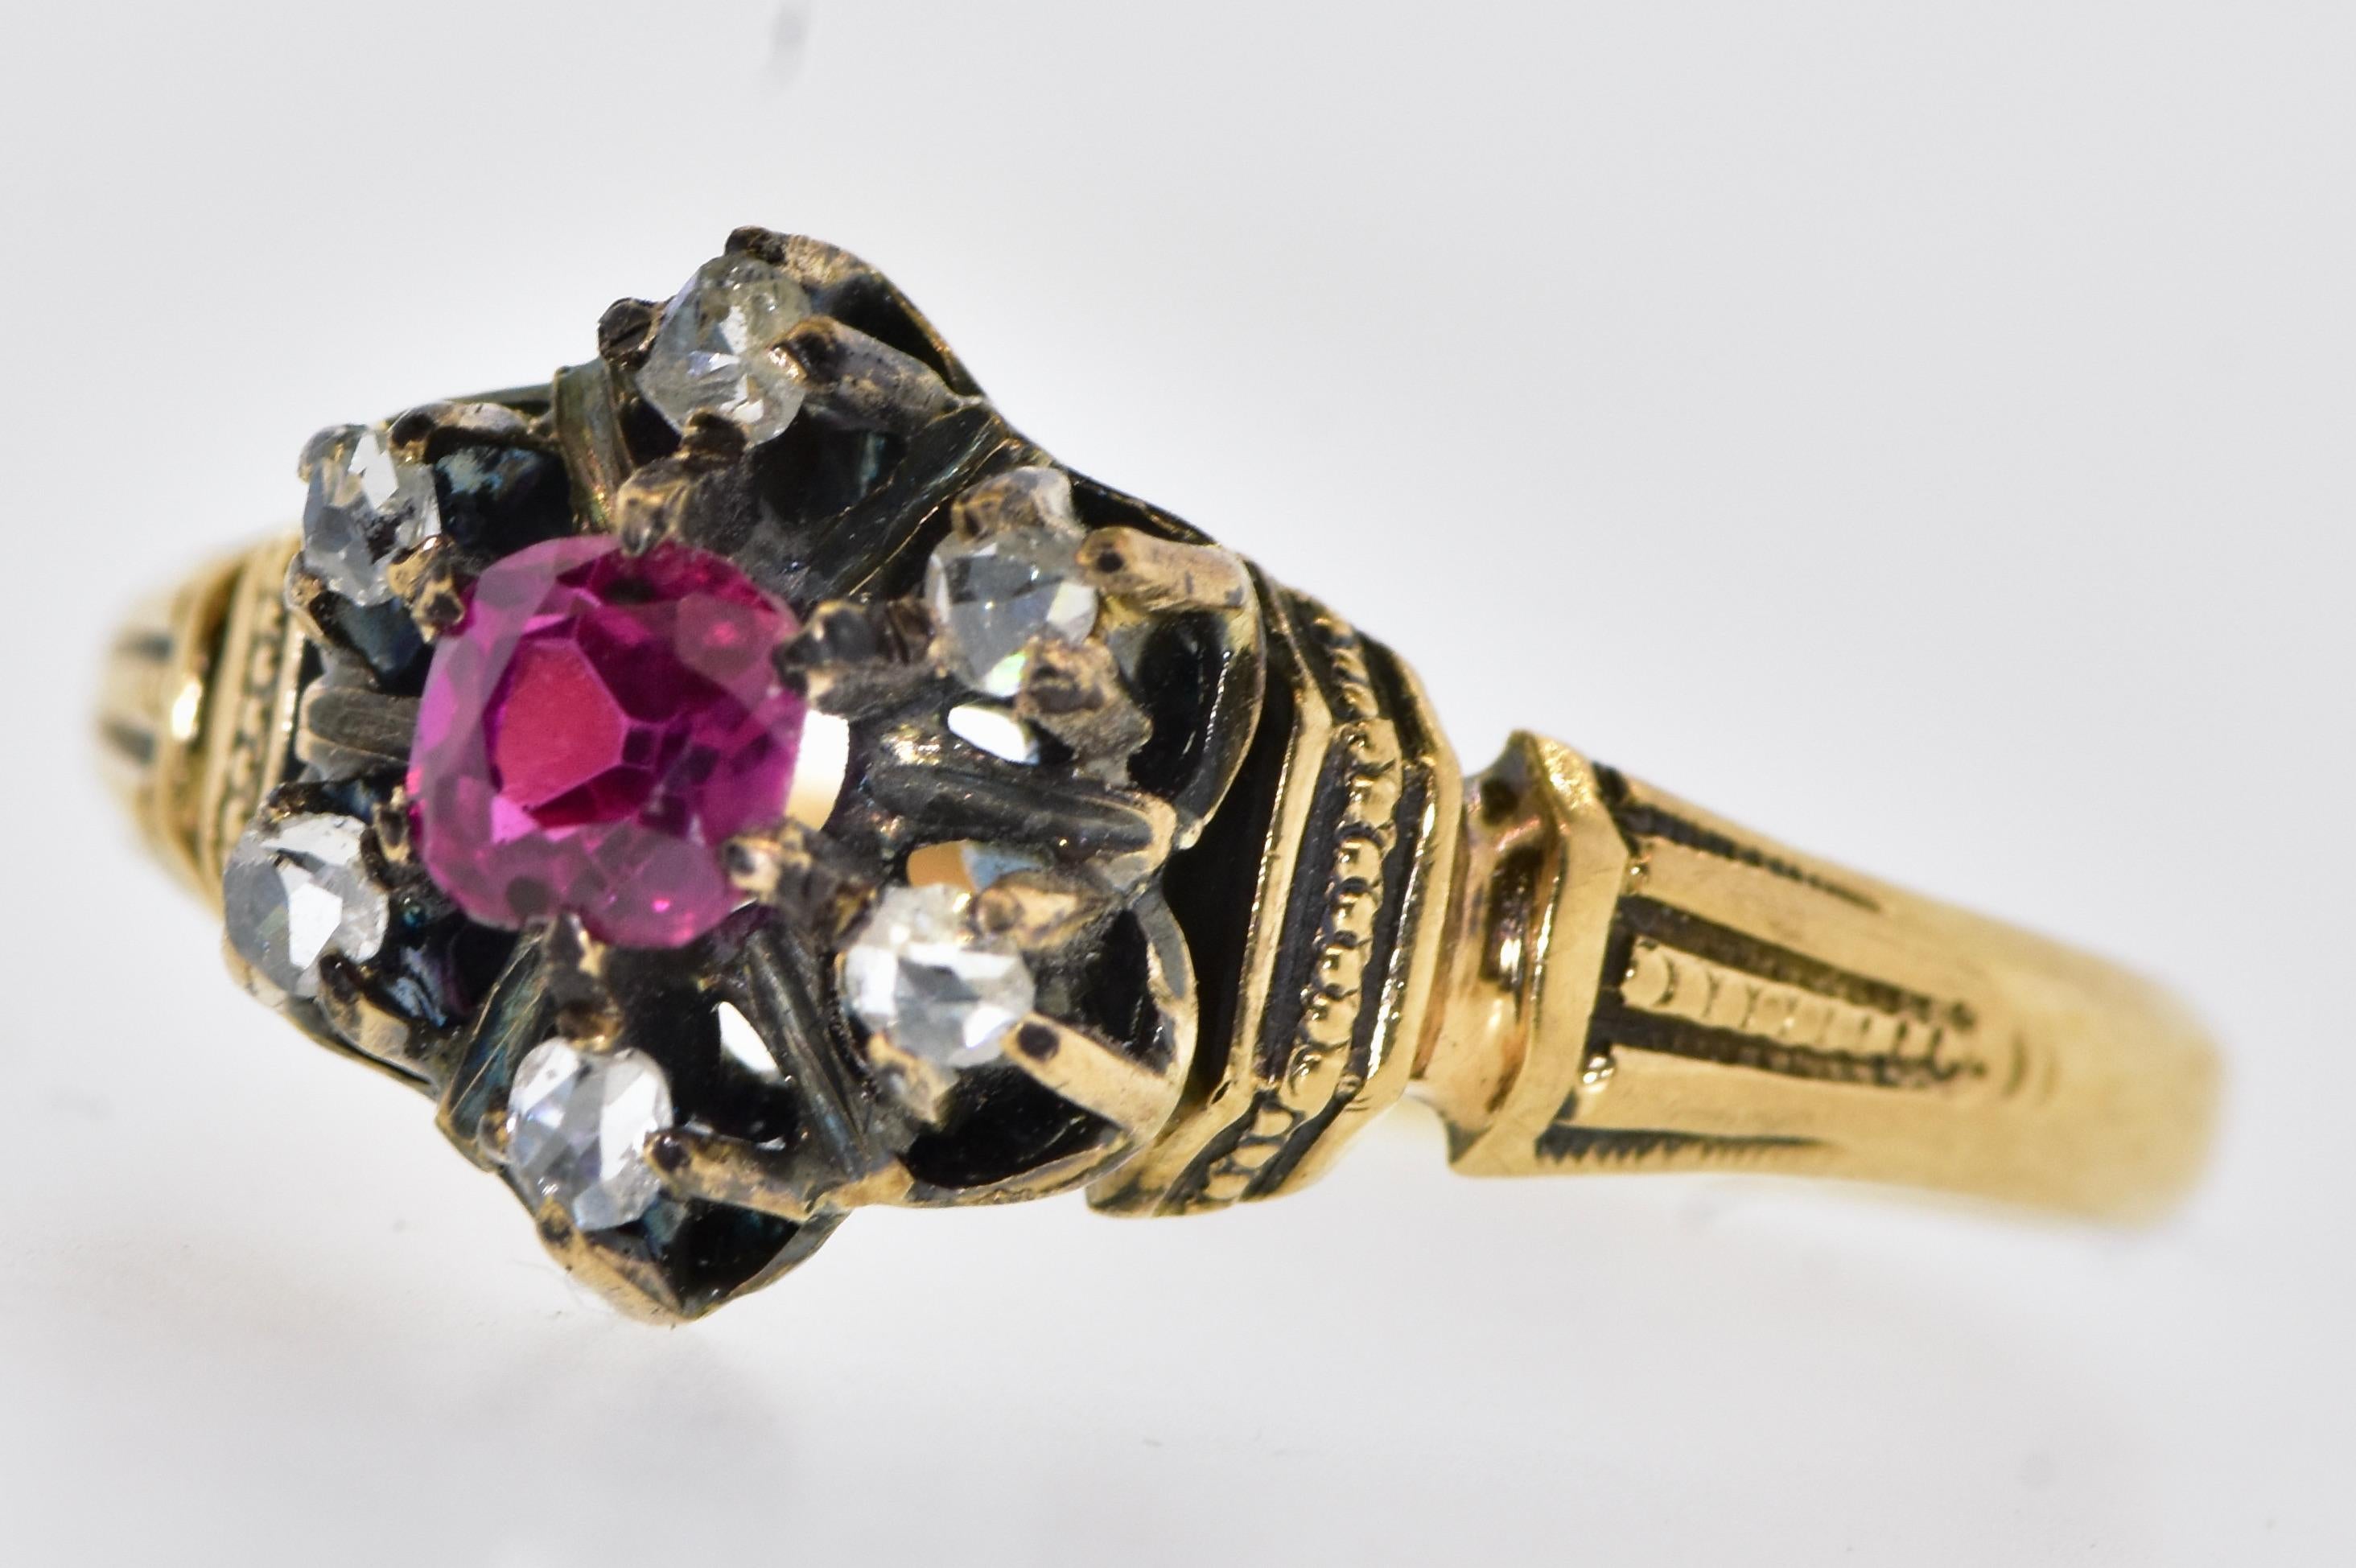 Antiker Ring mit Diamanten und Rubinen.  Dieses wahrscheinlich in Amerika gefertigte kleine Meisterwerk besteht aus 6 kleinen, in Zacken gefassten Diamanten im Rosenschliff, die einen natürlichen, leuchtend roten Rubin umschließen, der